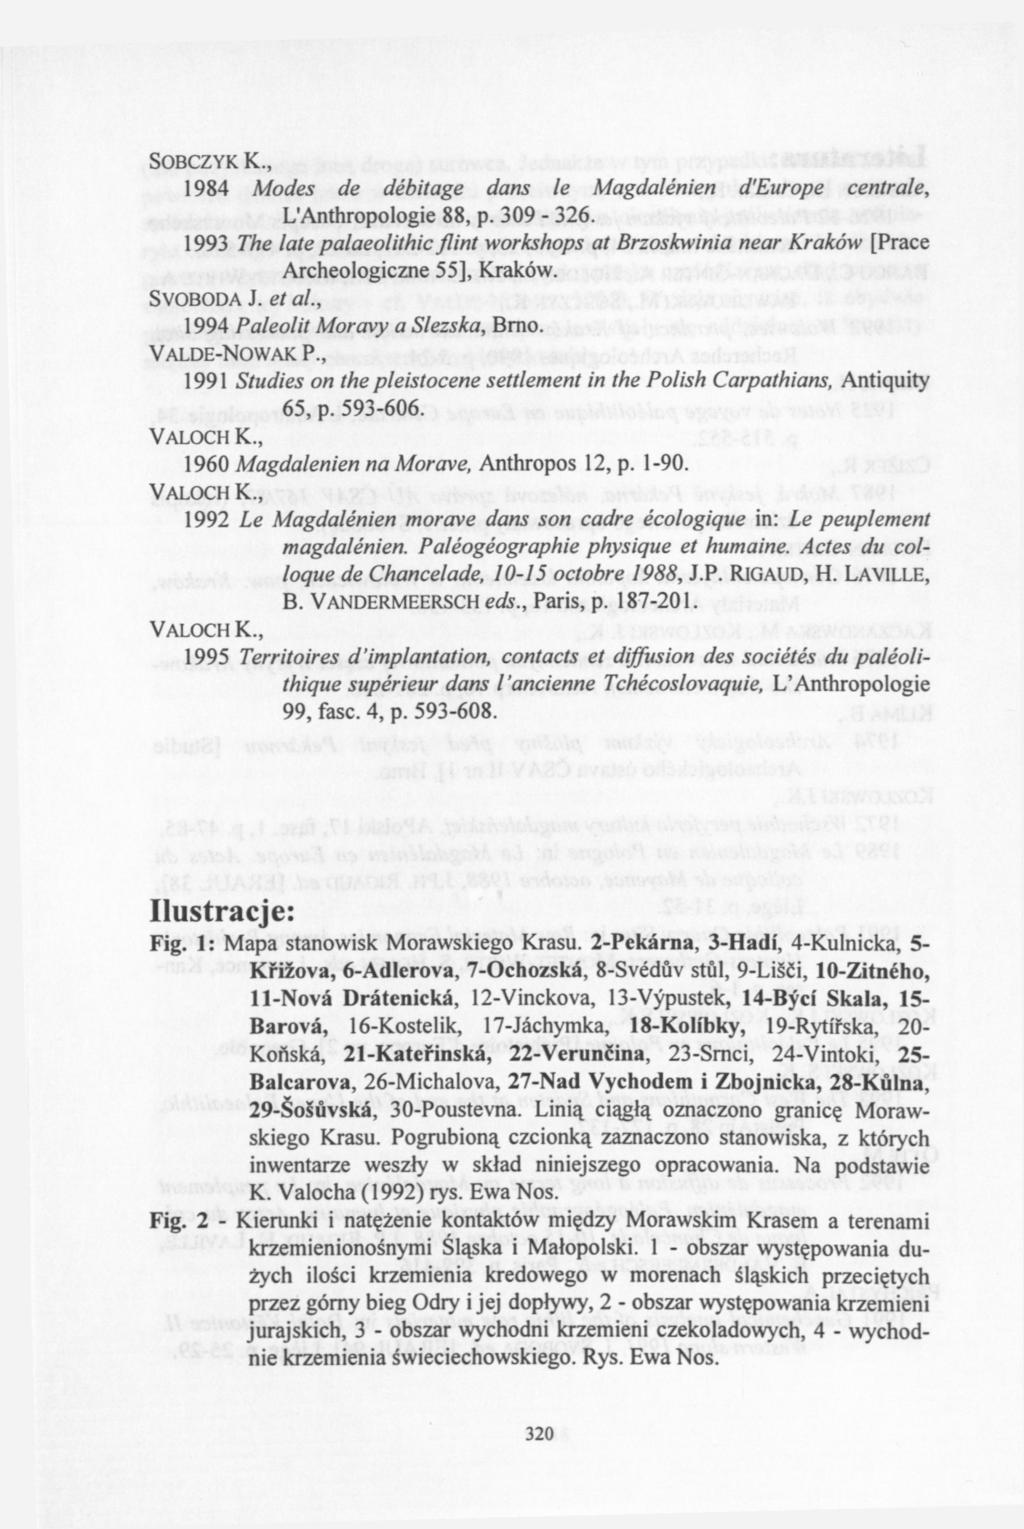 SOBCZYK К., 1984 Modes de débitage dans le Magdalénien d'europe centrale, L'Anthropologie 88, p. 309-326.